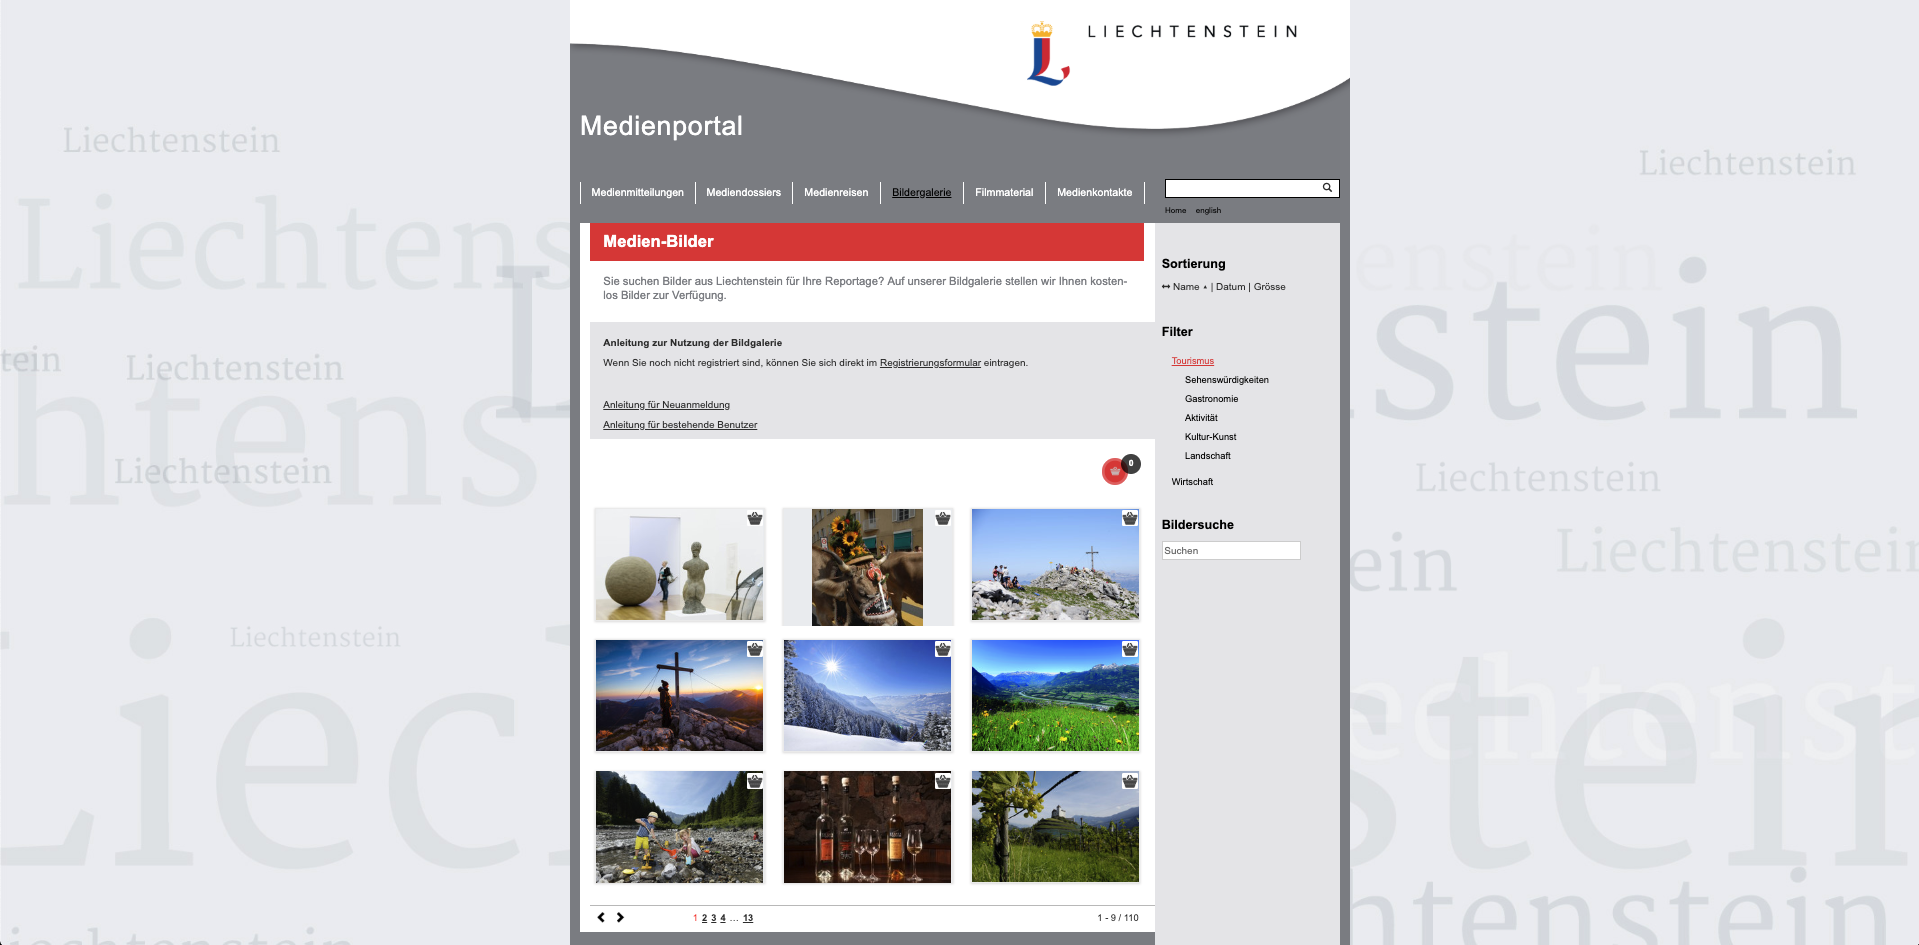 Medien Portal Liechtenstein Marketing